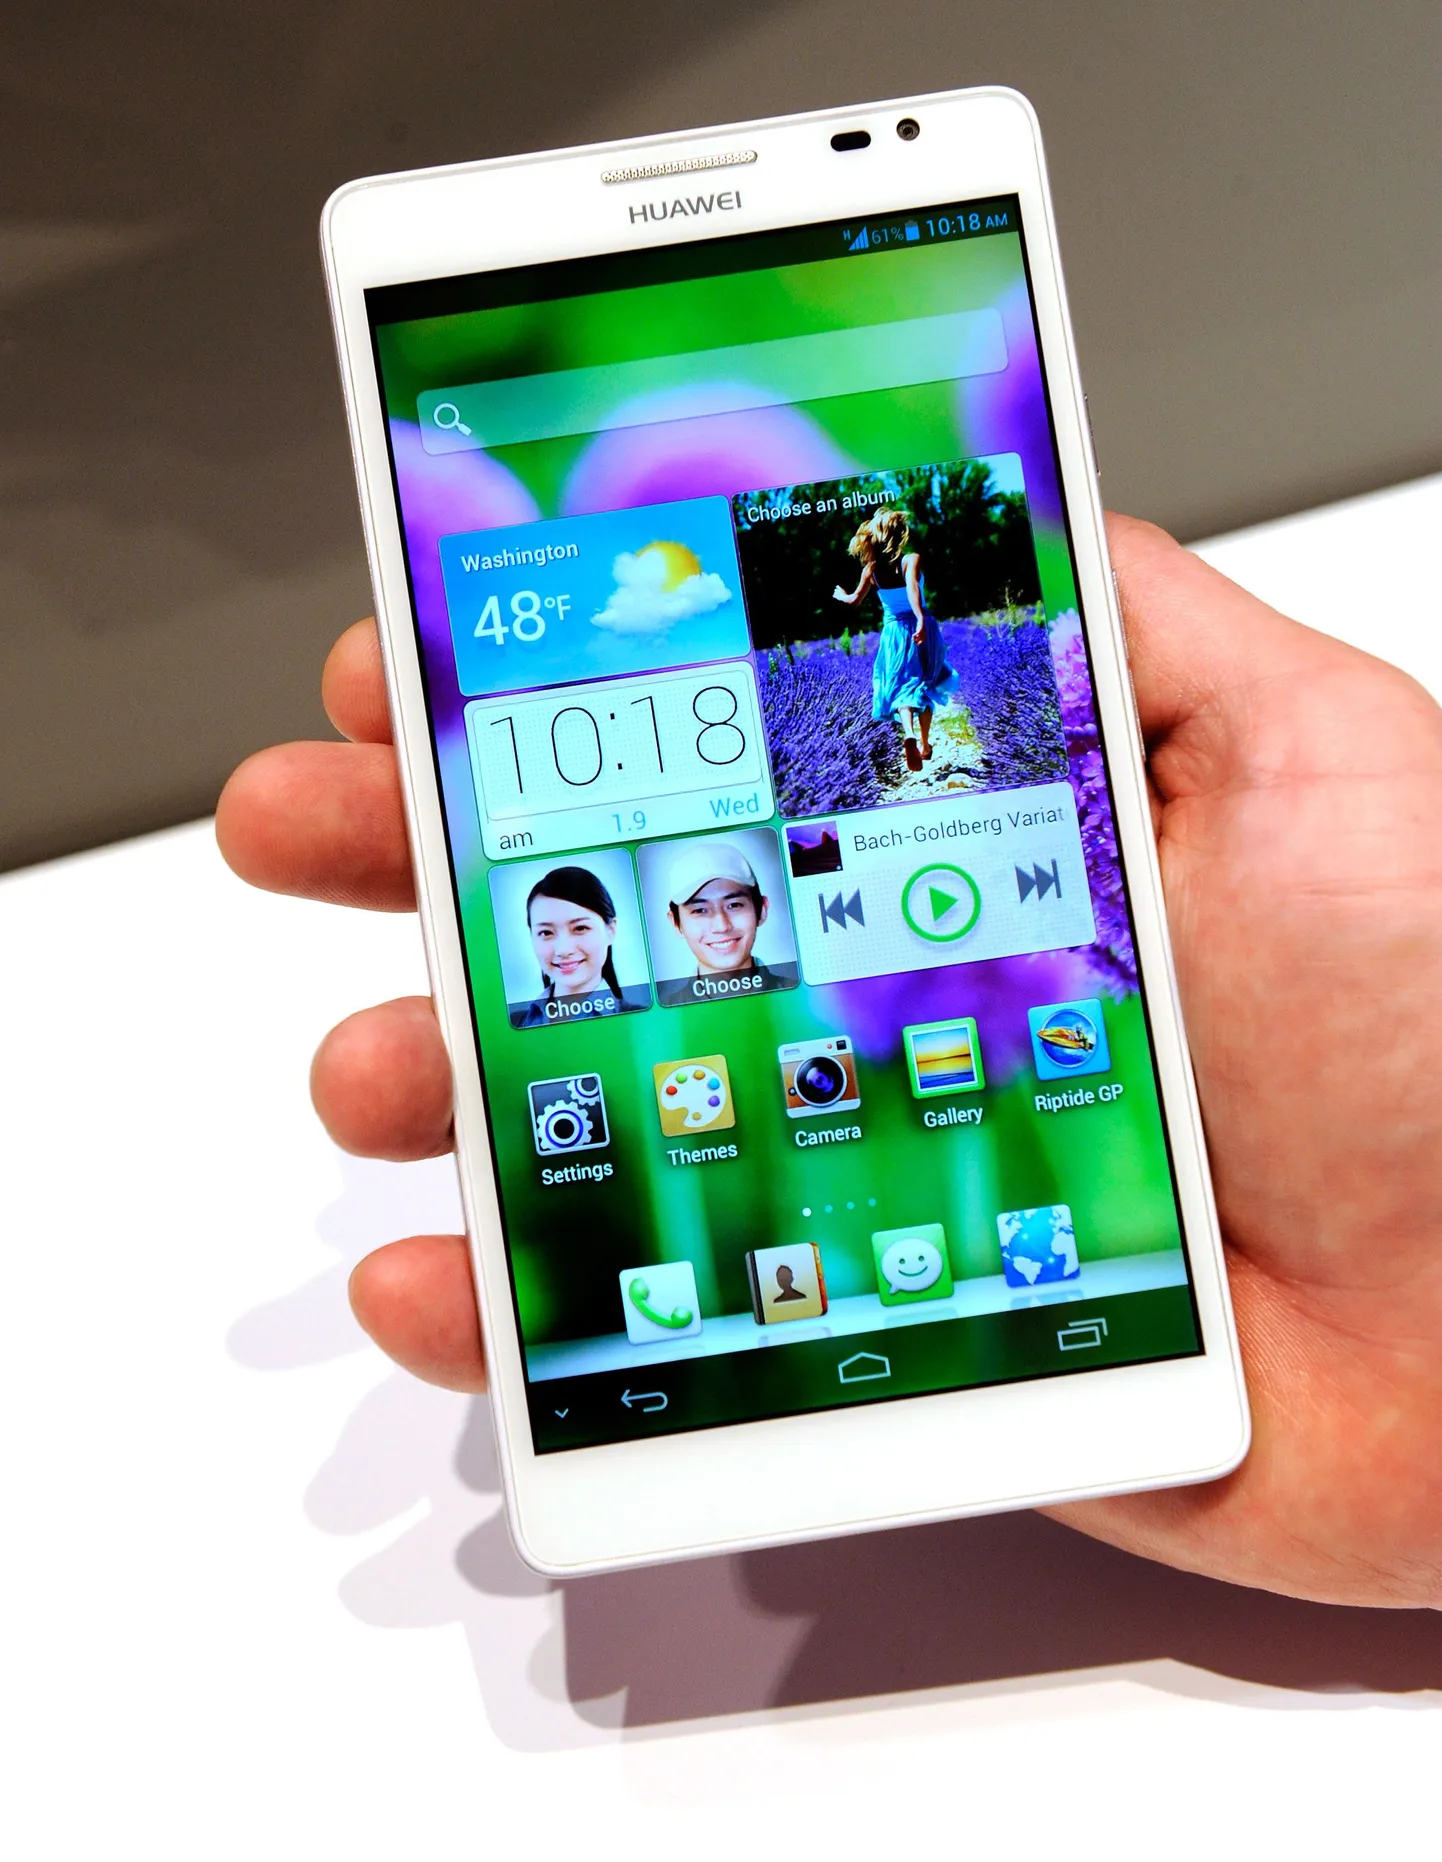 Huawei Ascendi uus nutitelefon. Illustratiivne foto.